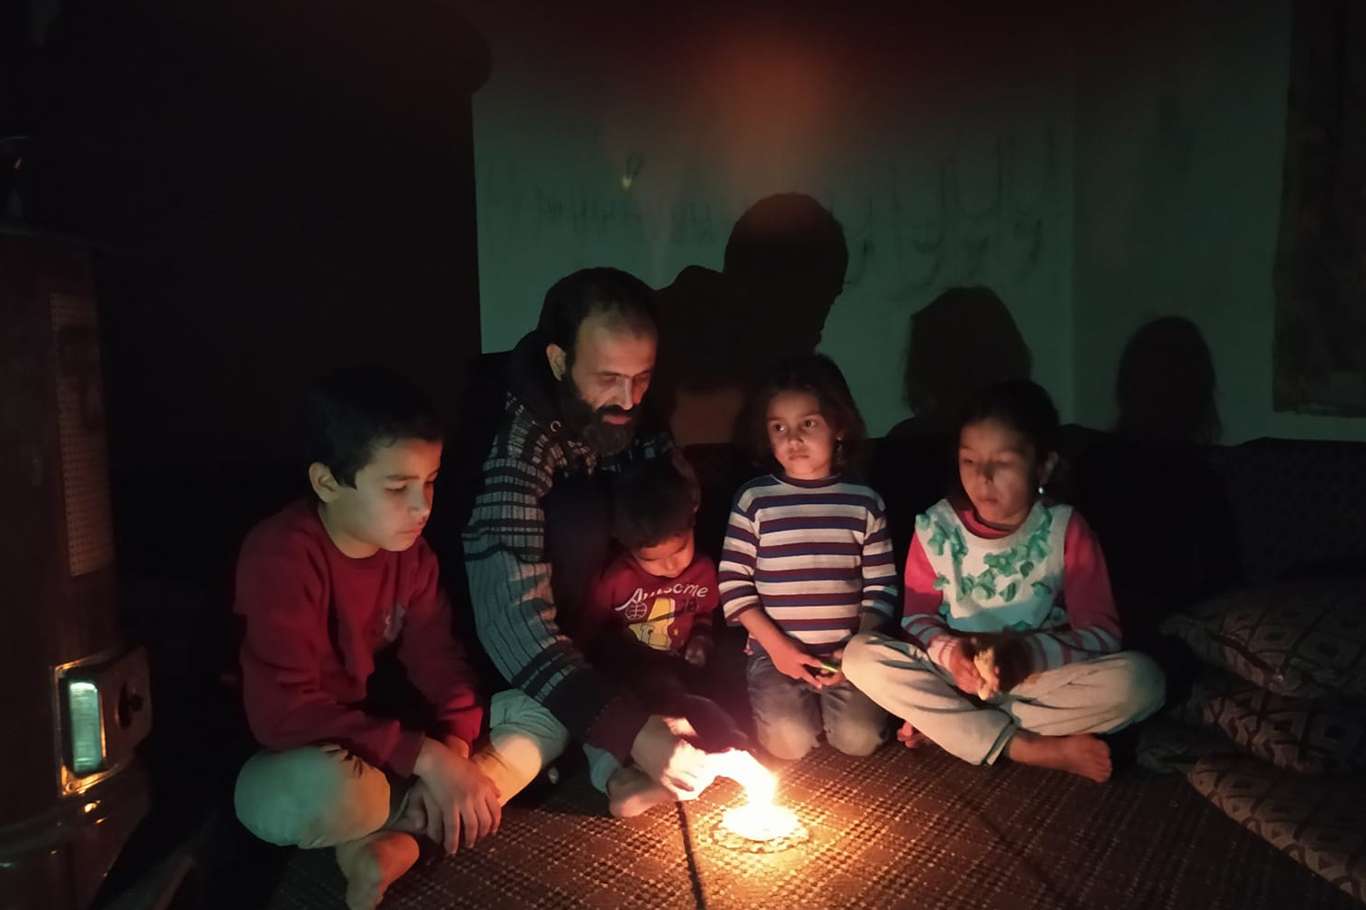 VİDEO HABER - Elektrik faturasını ödeyemeyen aile karanlıkta kaldı